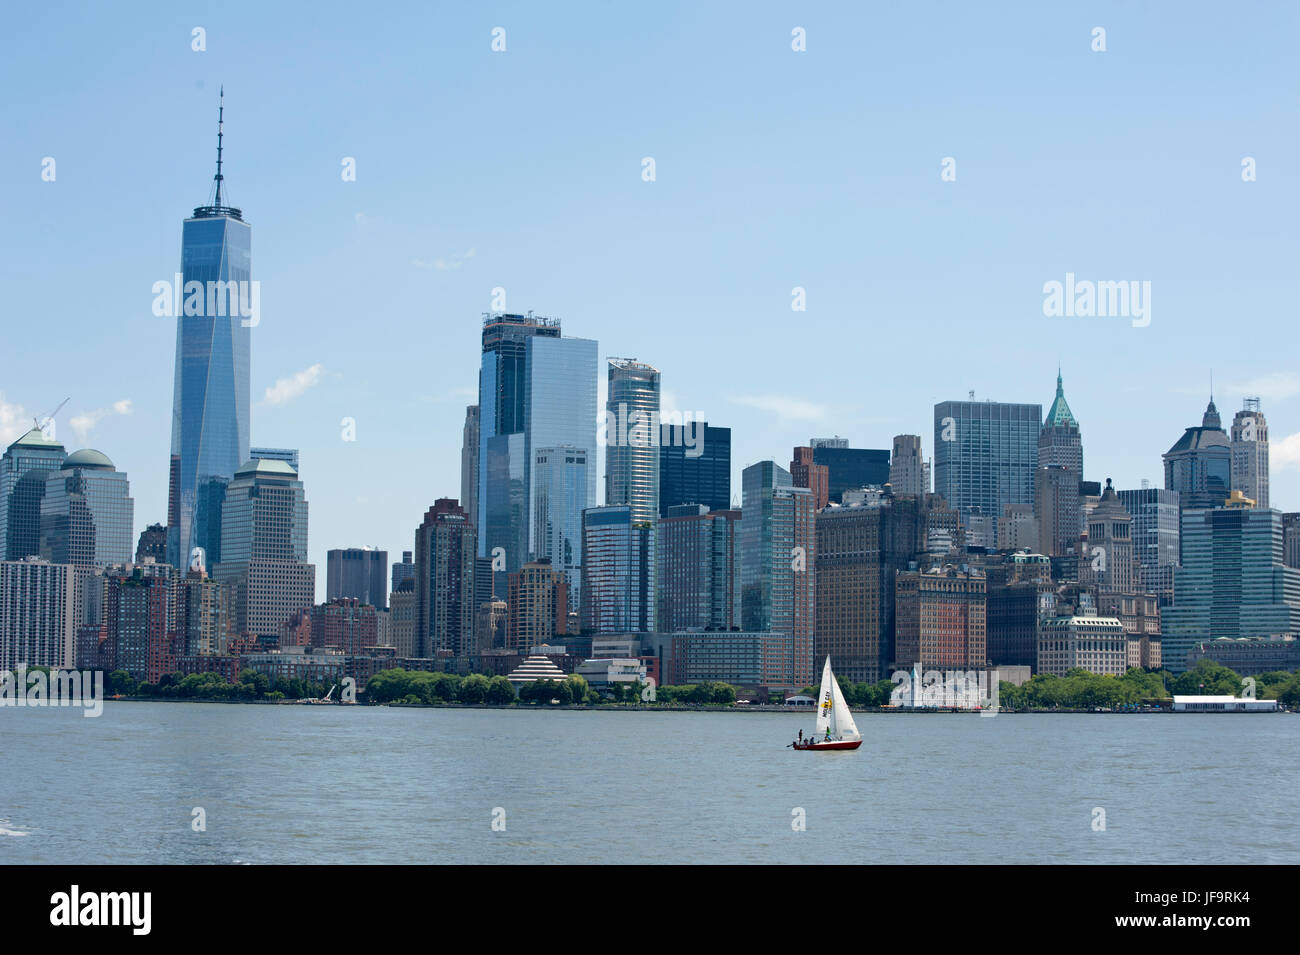 La parte inferiore di Manhattan come si vede dal Fiume Hudson, con 1 World Trade Center e il museo del patrimonio ebraico, Pier A e altri punti di riferimento. Giugno 28, 2017 Foto Stock